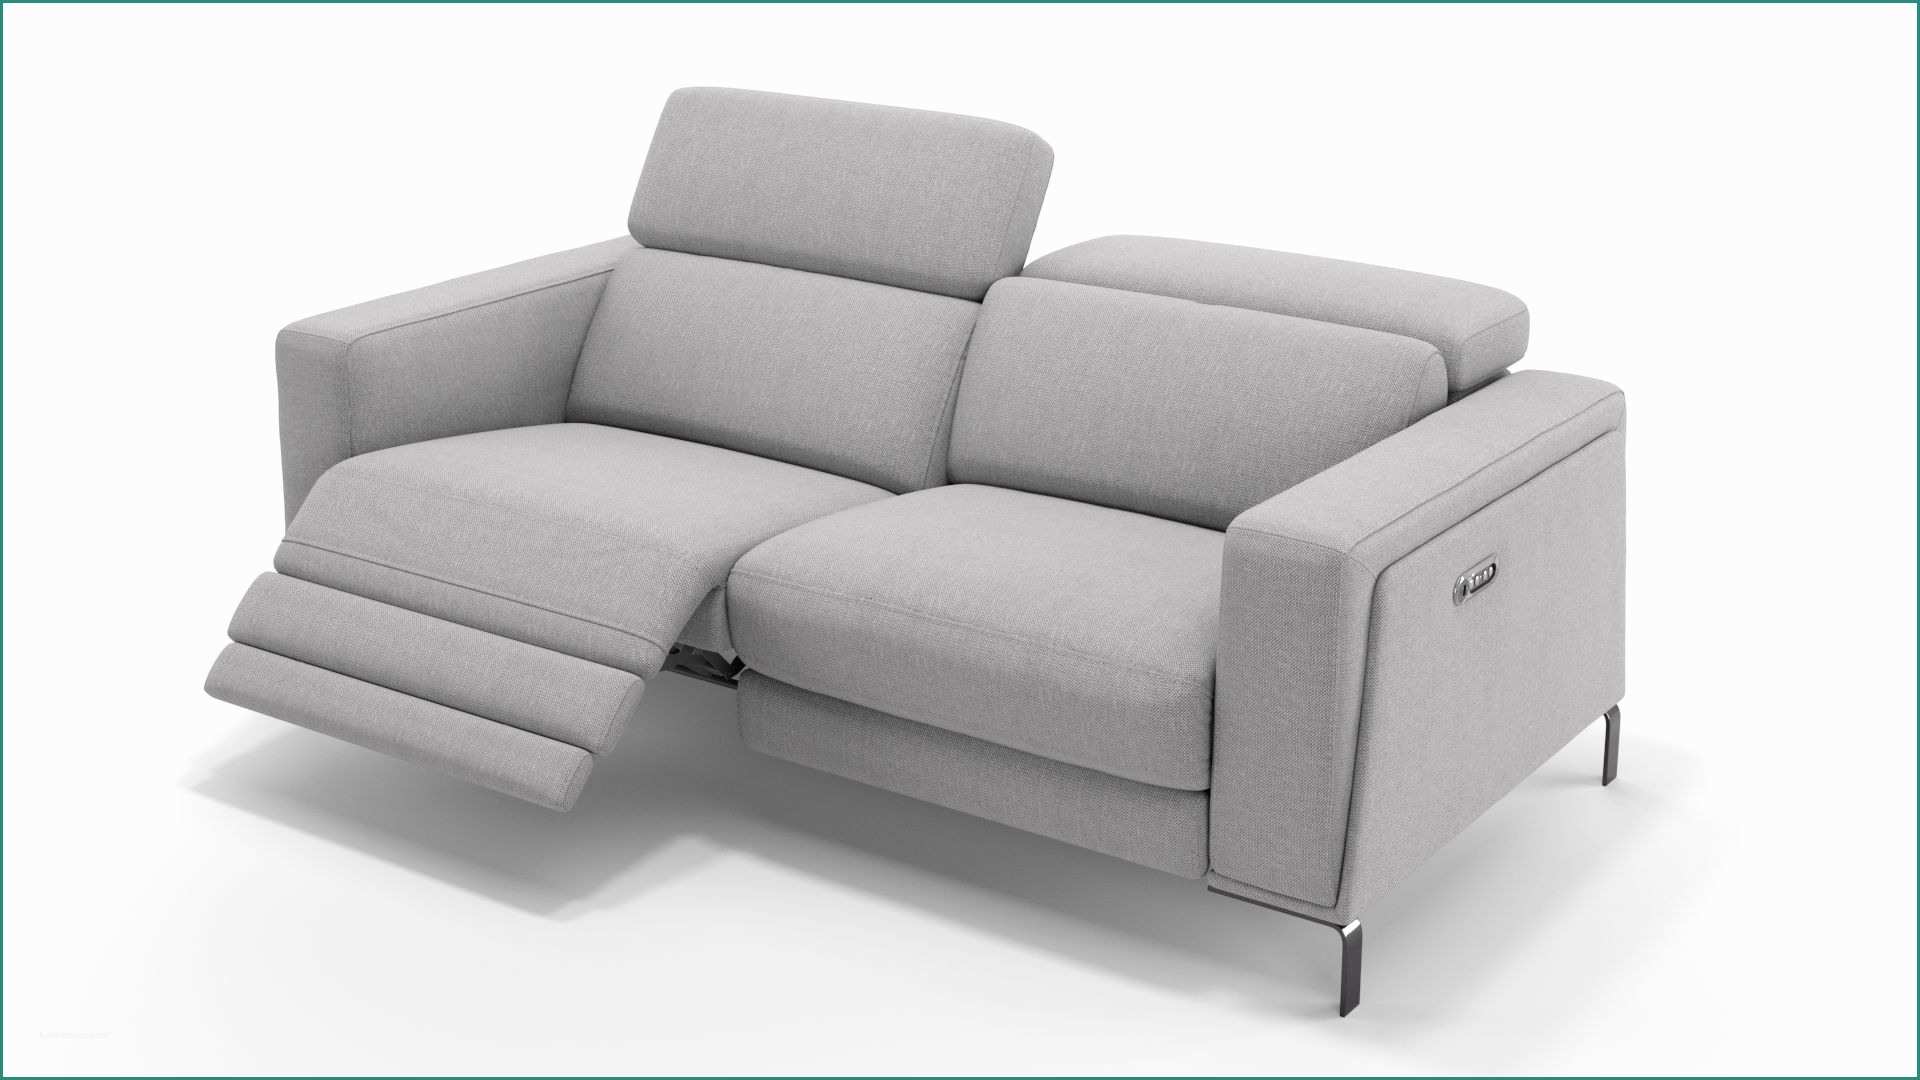 Poltrona Le Corbusier E 3er Couch